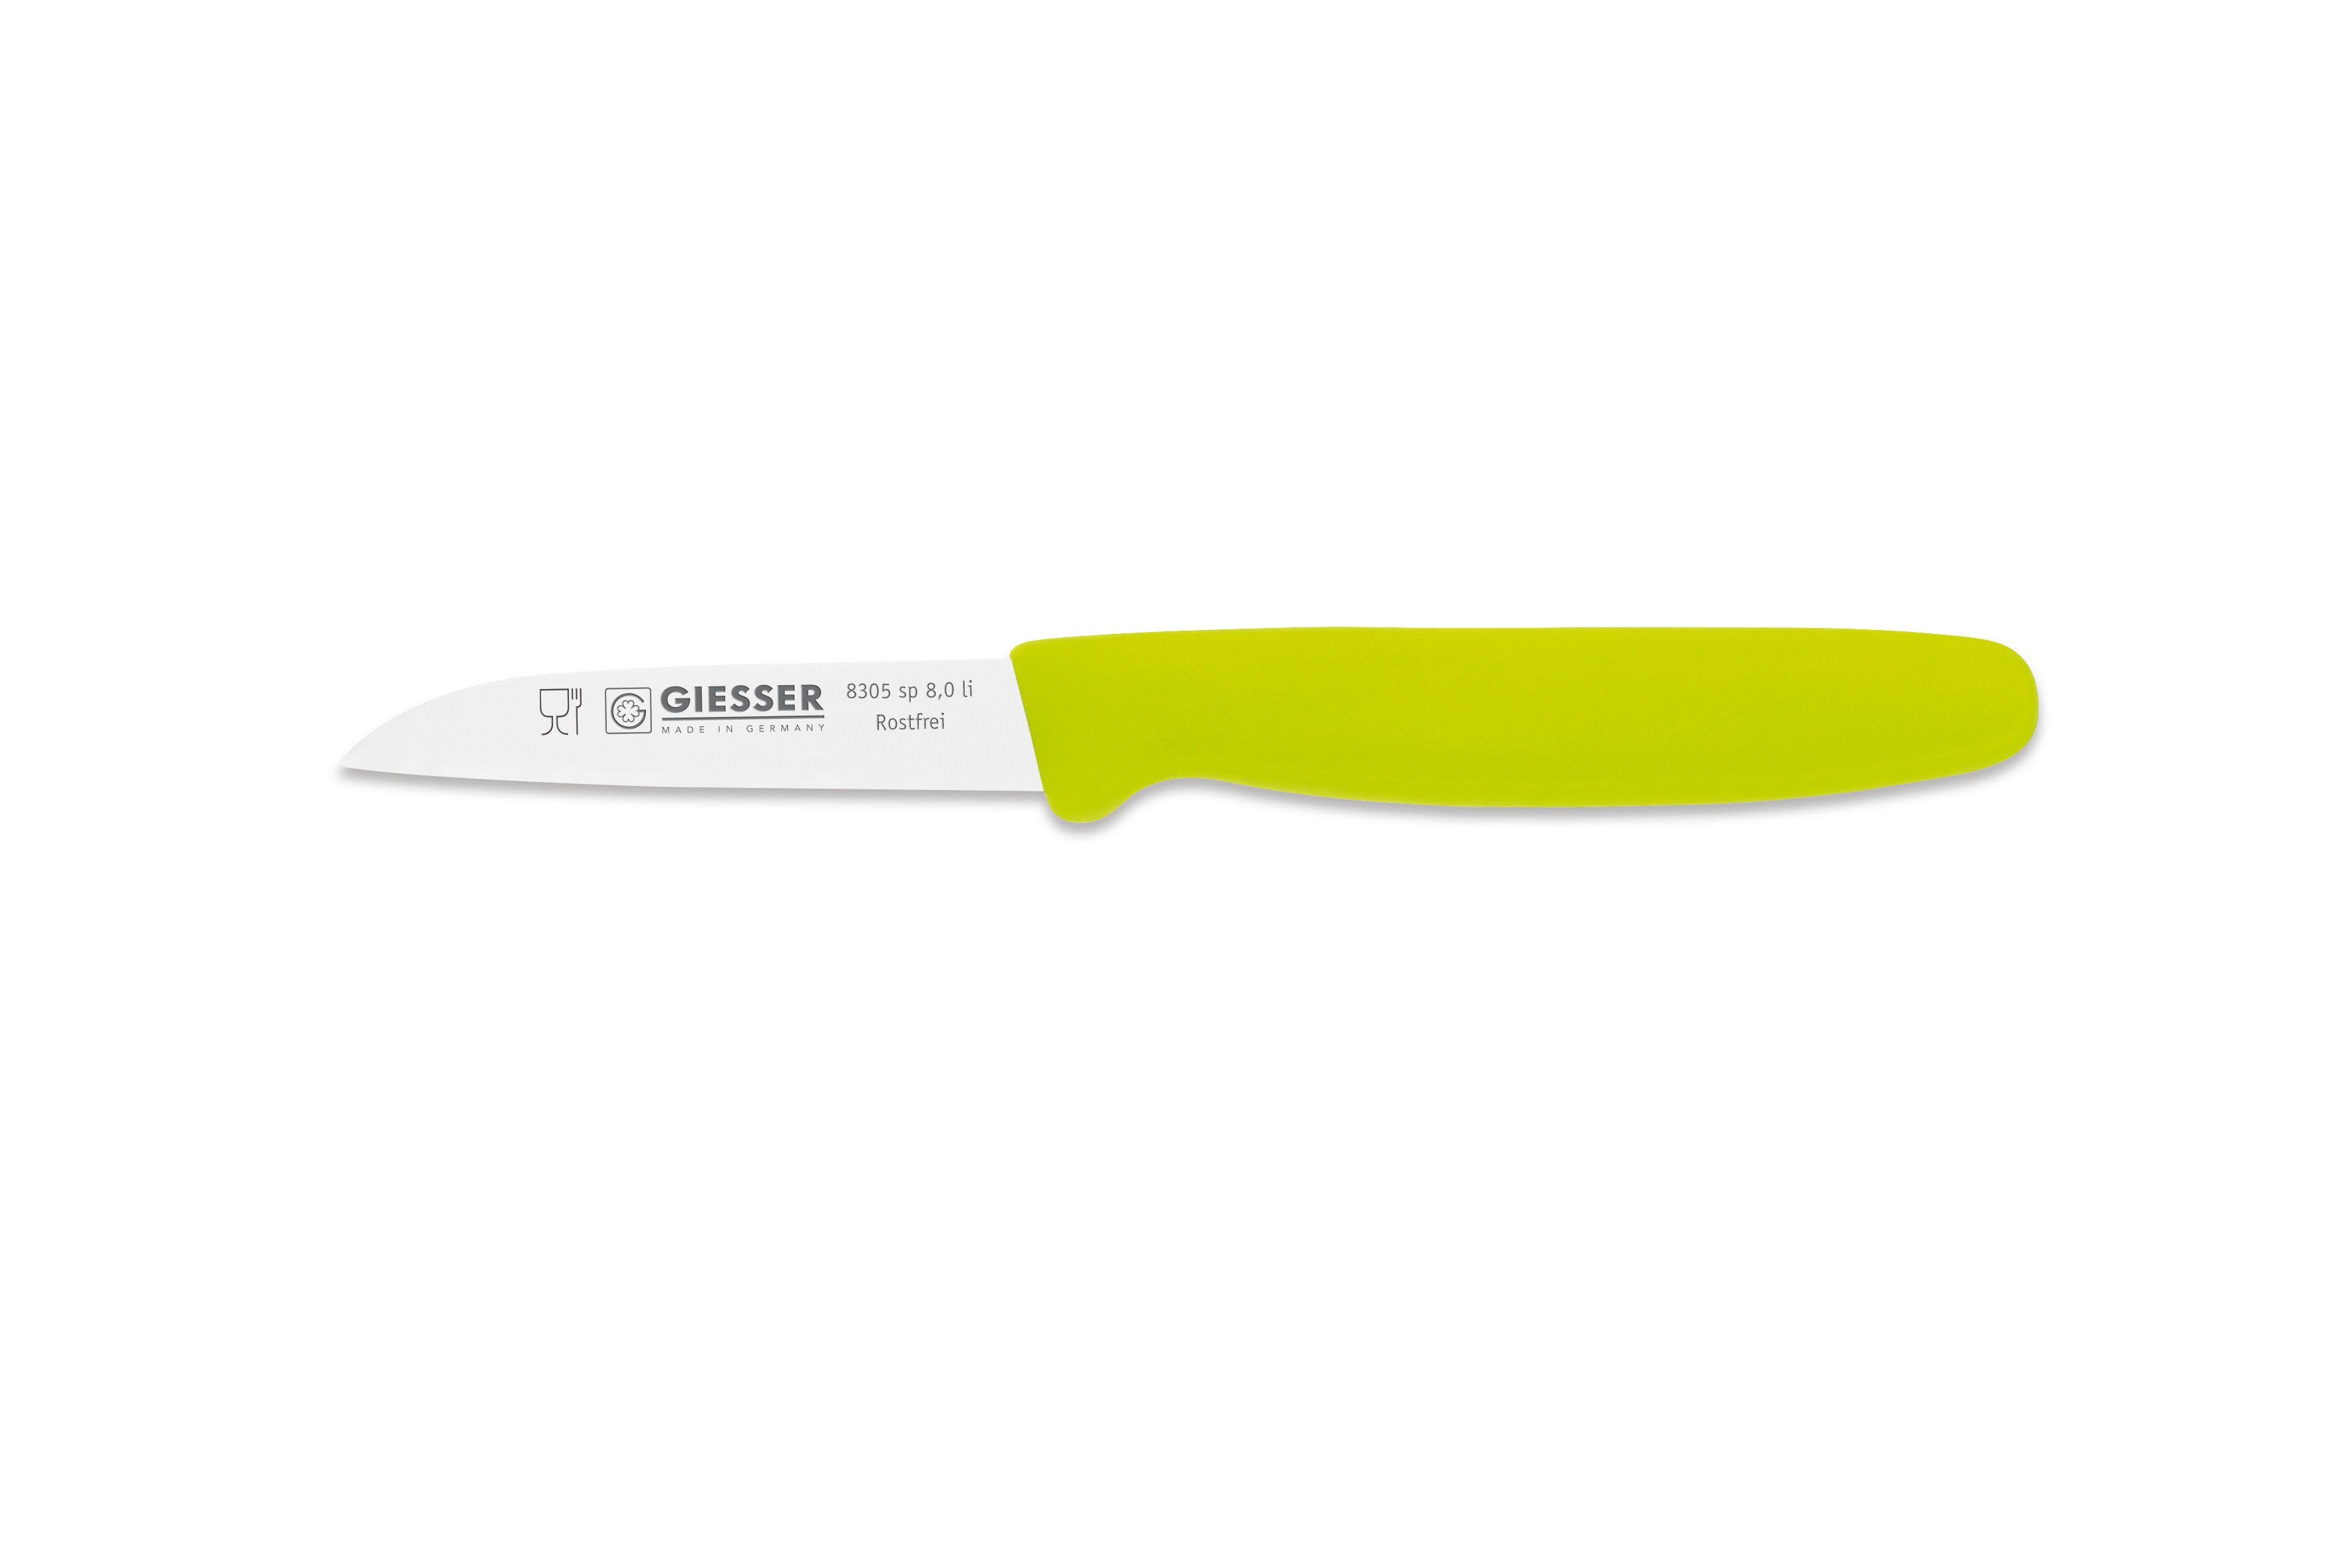 Giesser Messer Gemüsemesser Küchenmesser 8305 Farben, Küchenmesser alle in sp 8 Limette 8 Schneide gerade Made Germany cm